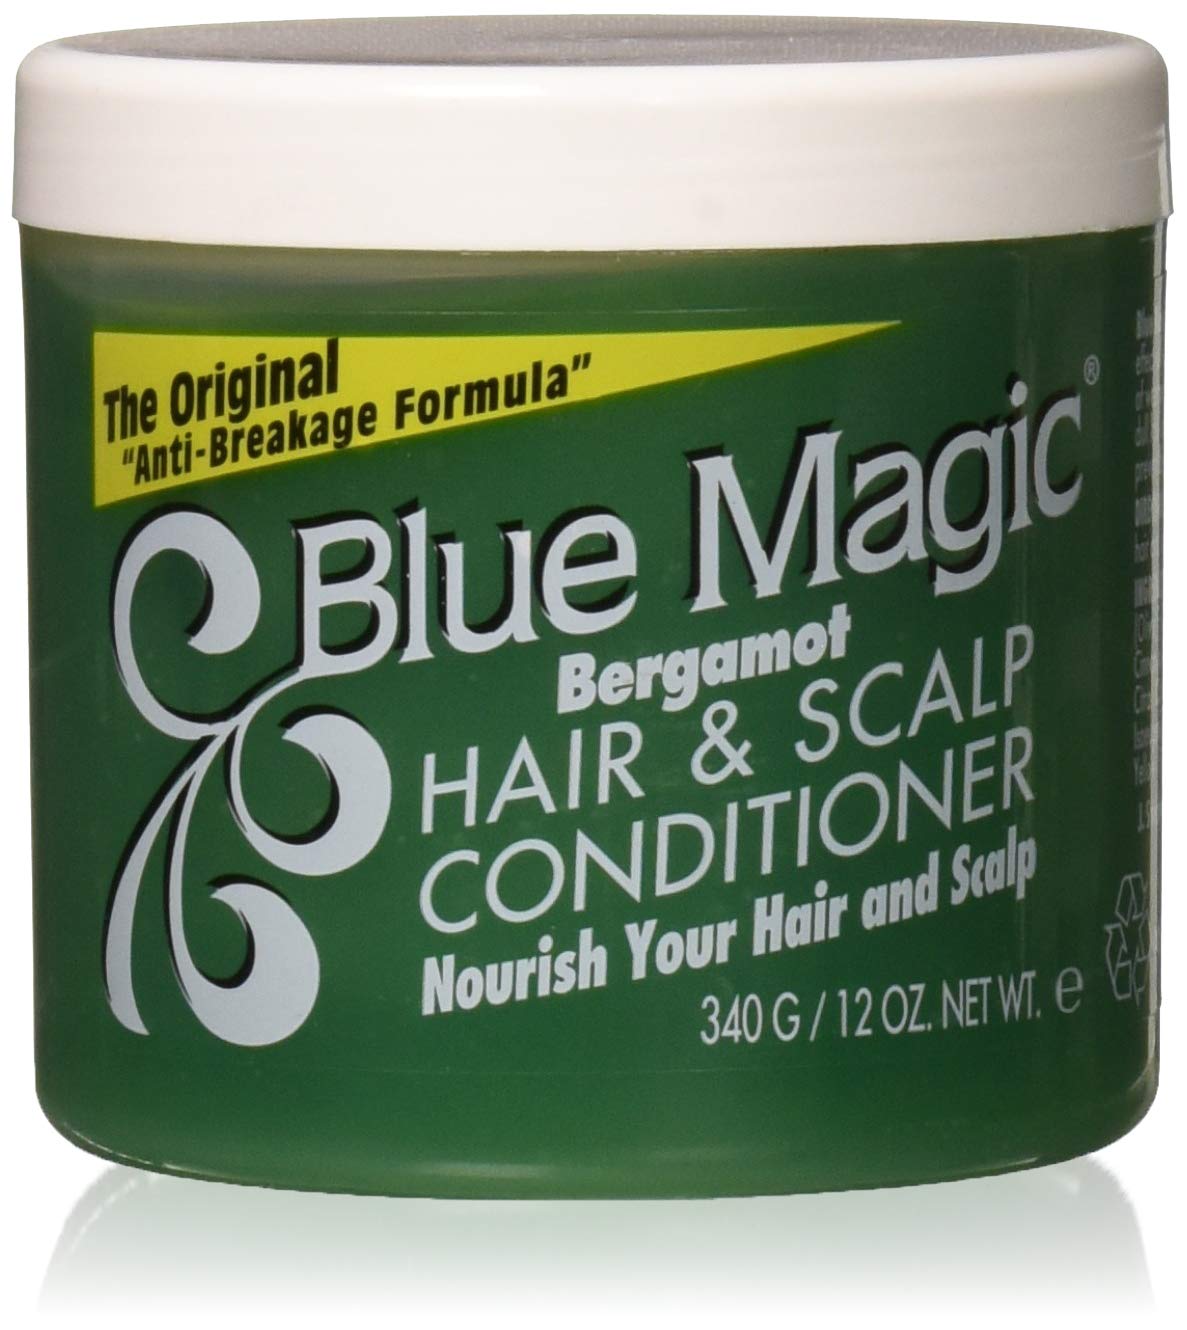 Blue Magic: Bergamont Hair & Scalp Conditioner